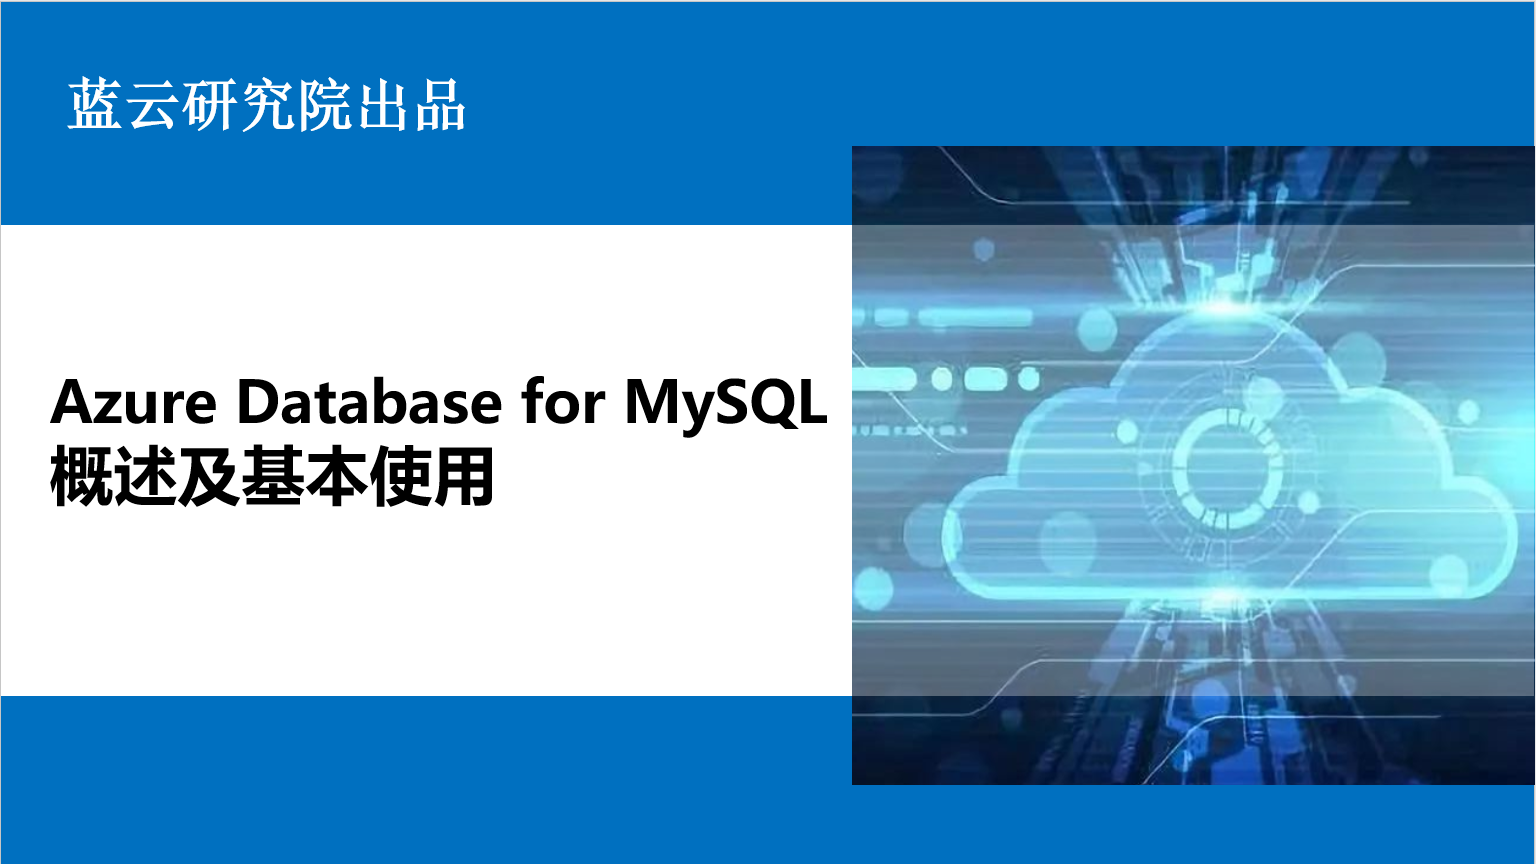 Azure Database for MySQL概述及基本使用